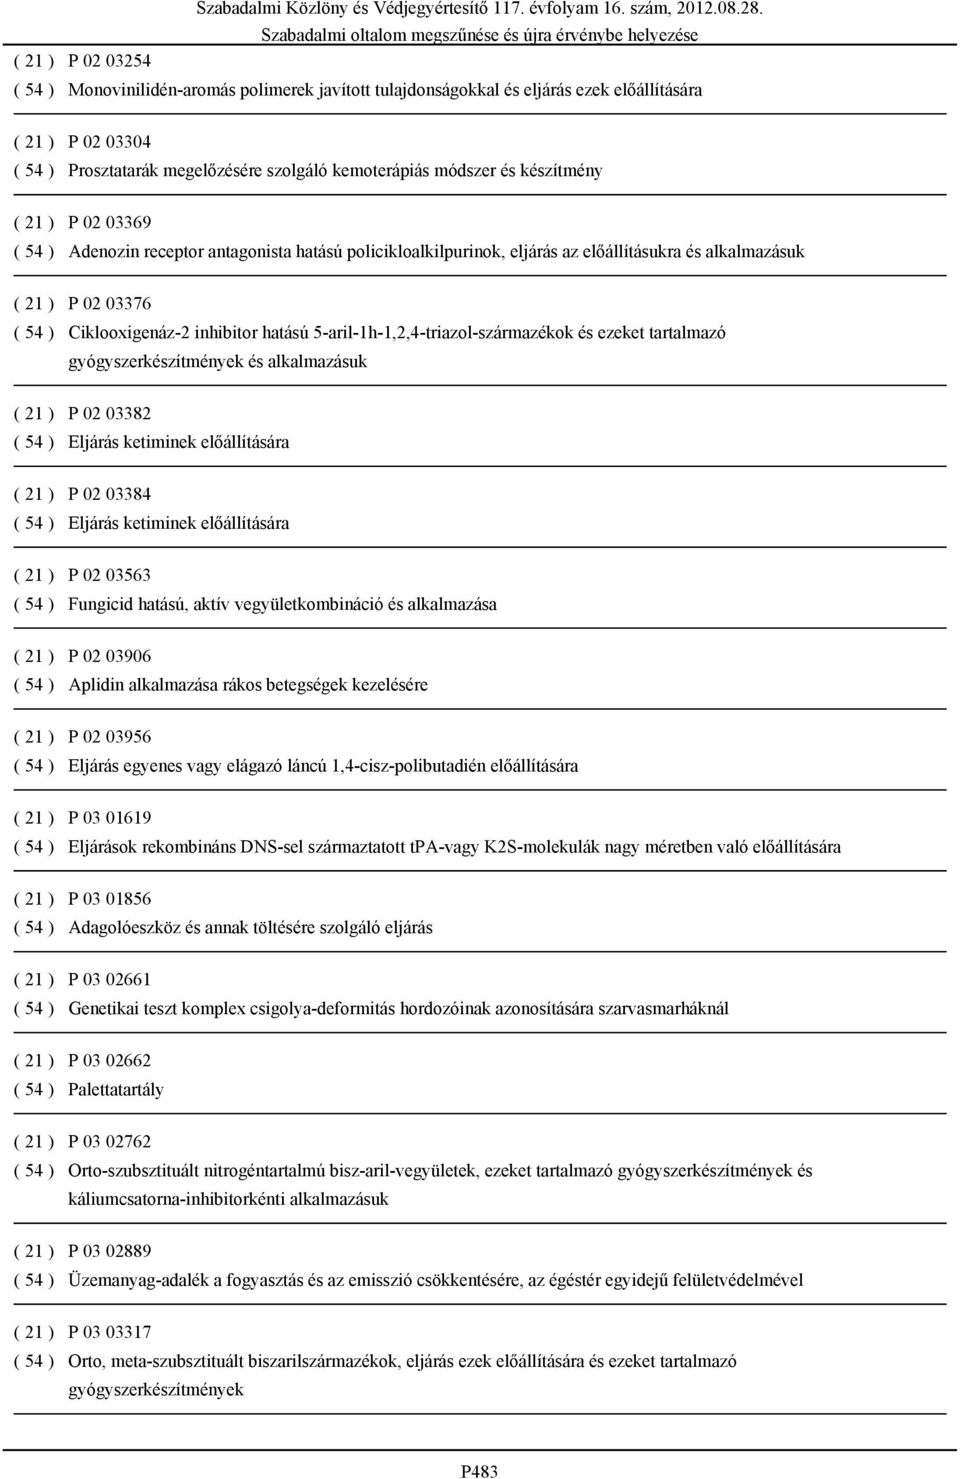 5-aril-1h-1,2,4-triazol-származékok és ezeket tartalmazó gyógyszerkészítmények és alkalmazásuk ( 21 ) P 02 03382 ( 54 ) Eljárás ketiminek előállítására ( 21 ) P 02 03384 ( 54 ) Eljárás ketiminek